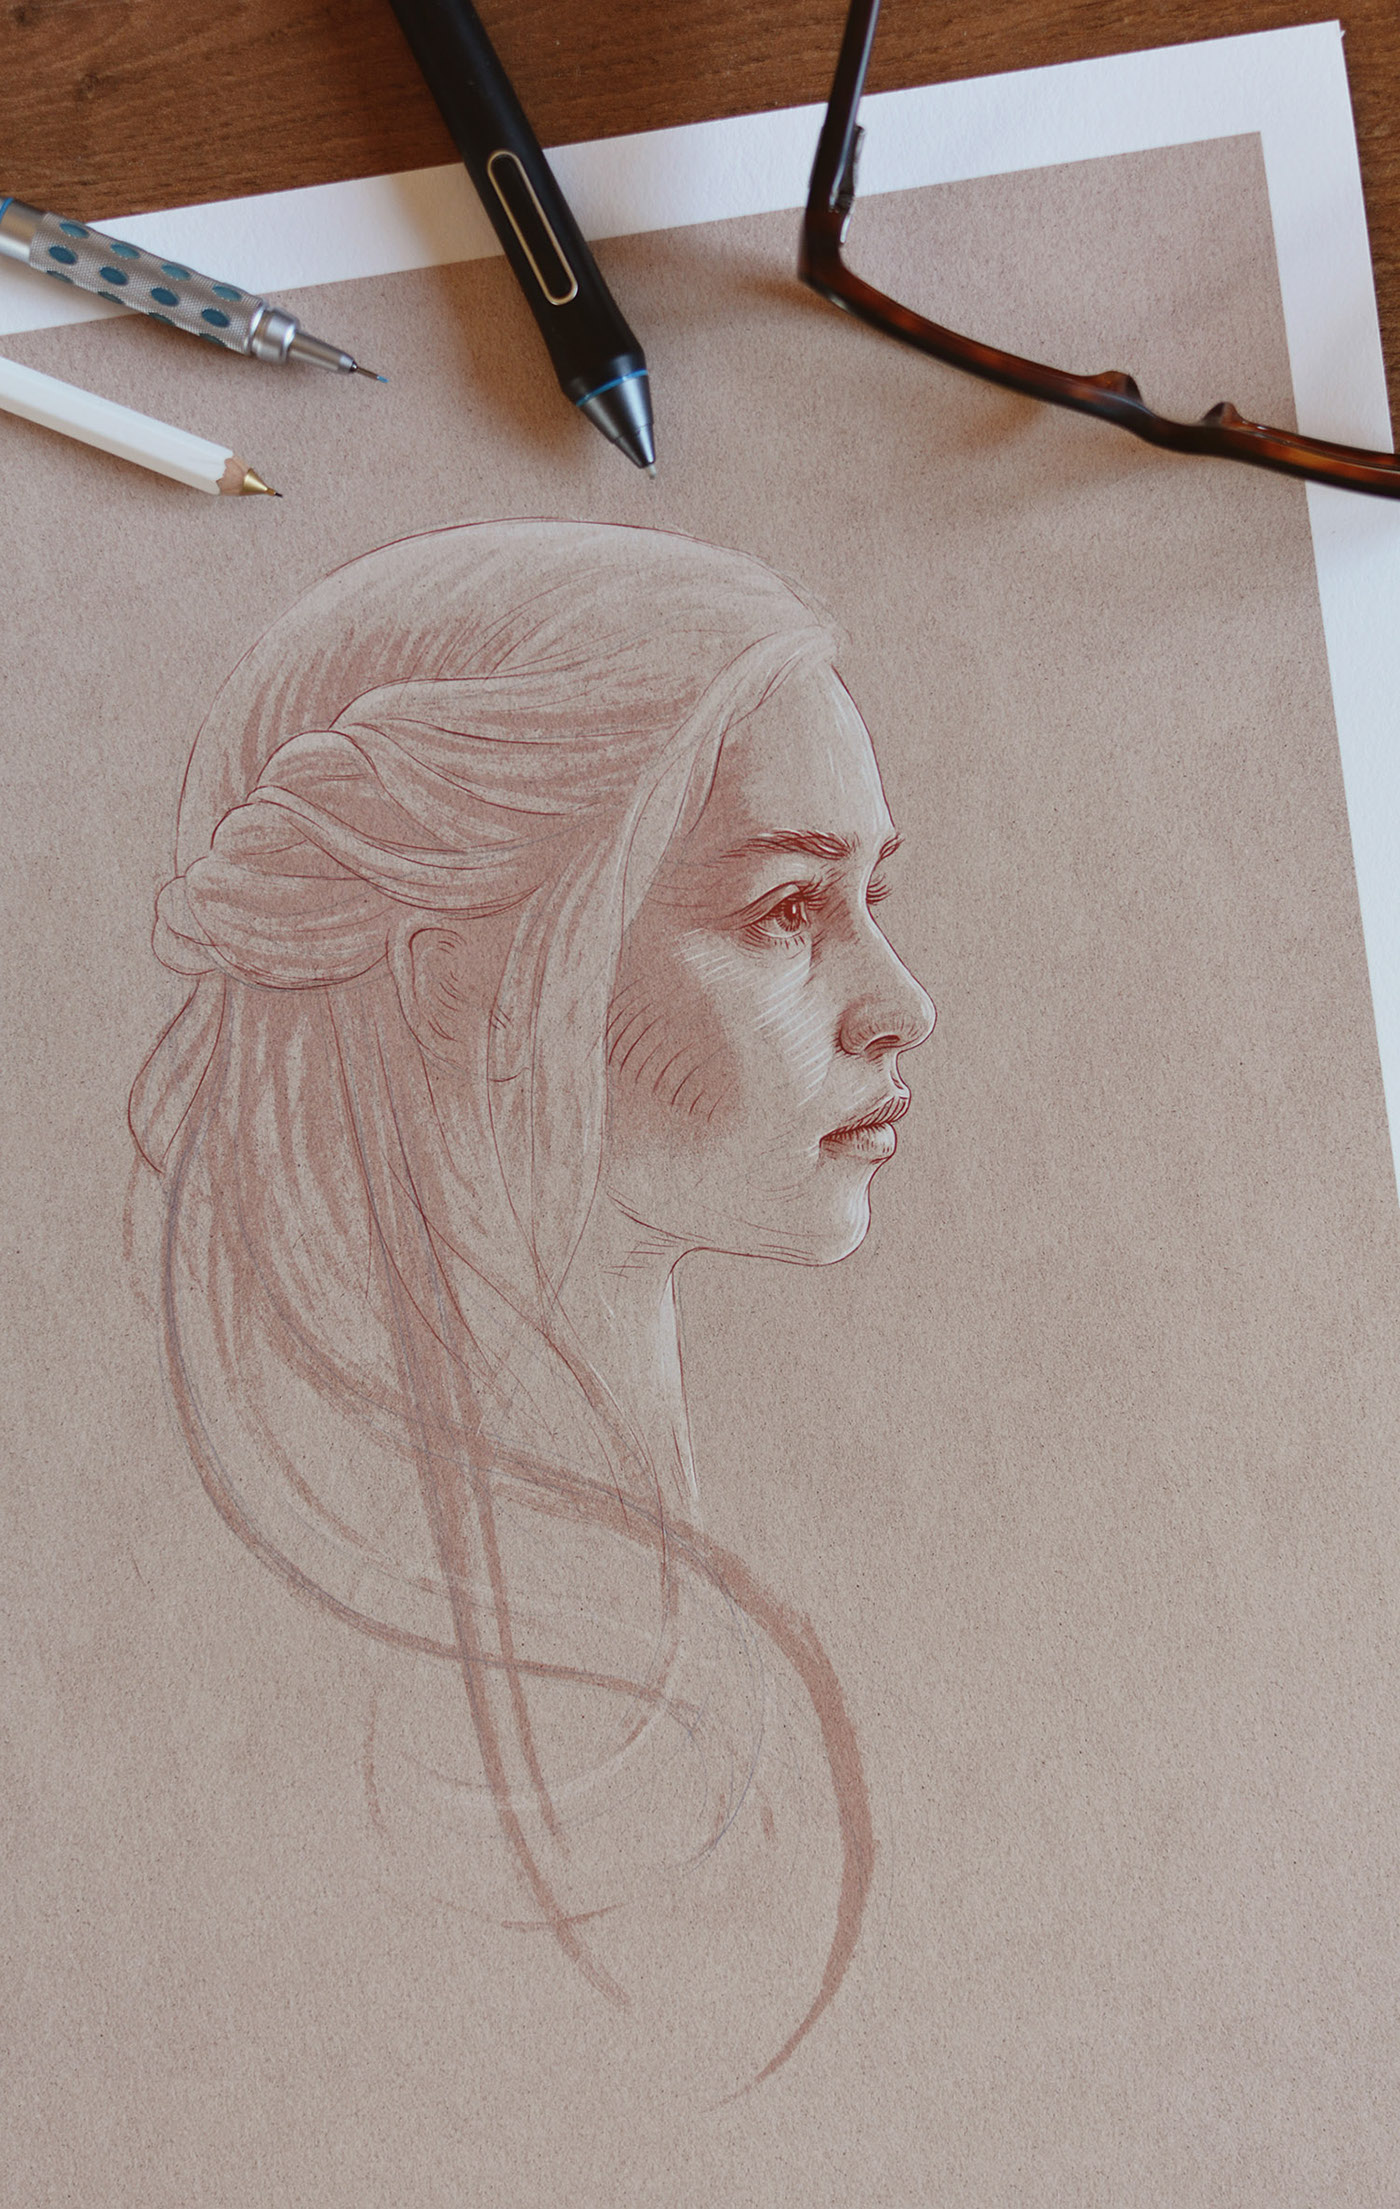 Adobe Portfolio Game of Thrones Arya Stark  jon stark lannister tyrion cersei mellisandre portrait sketch